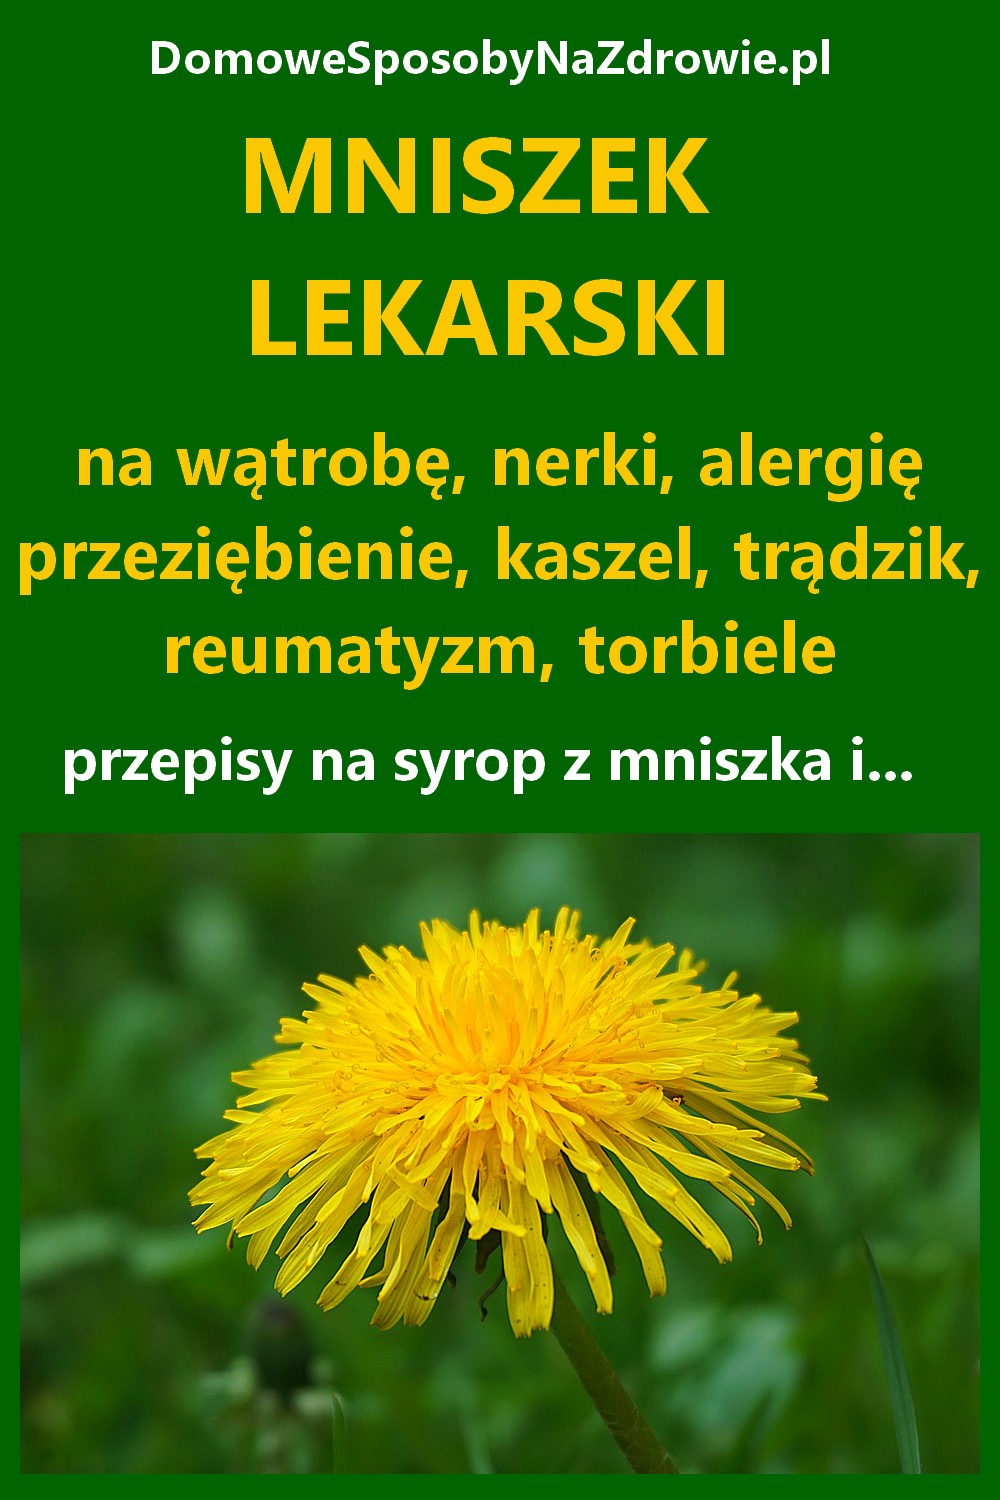 DomoweSposobyNaZdrowie.pl-mniszek-lekarski